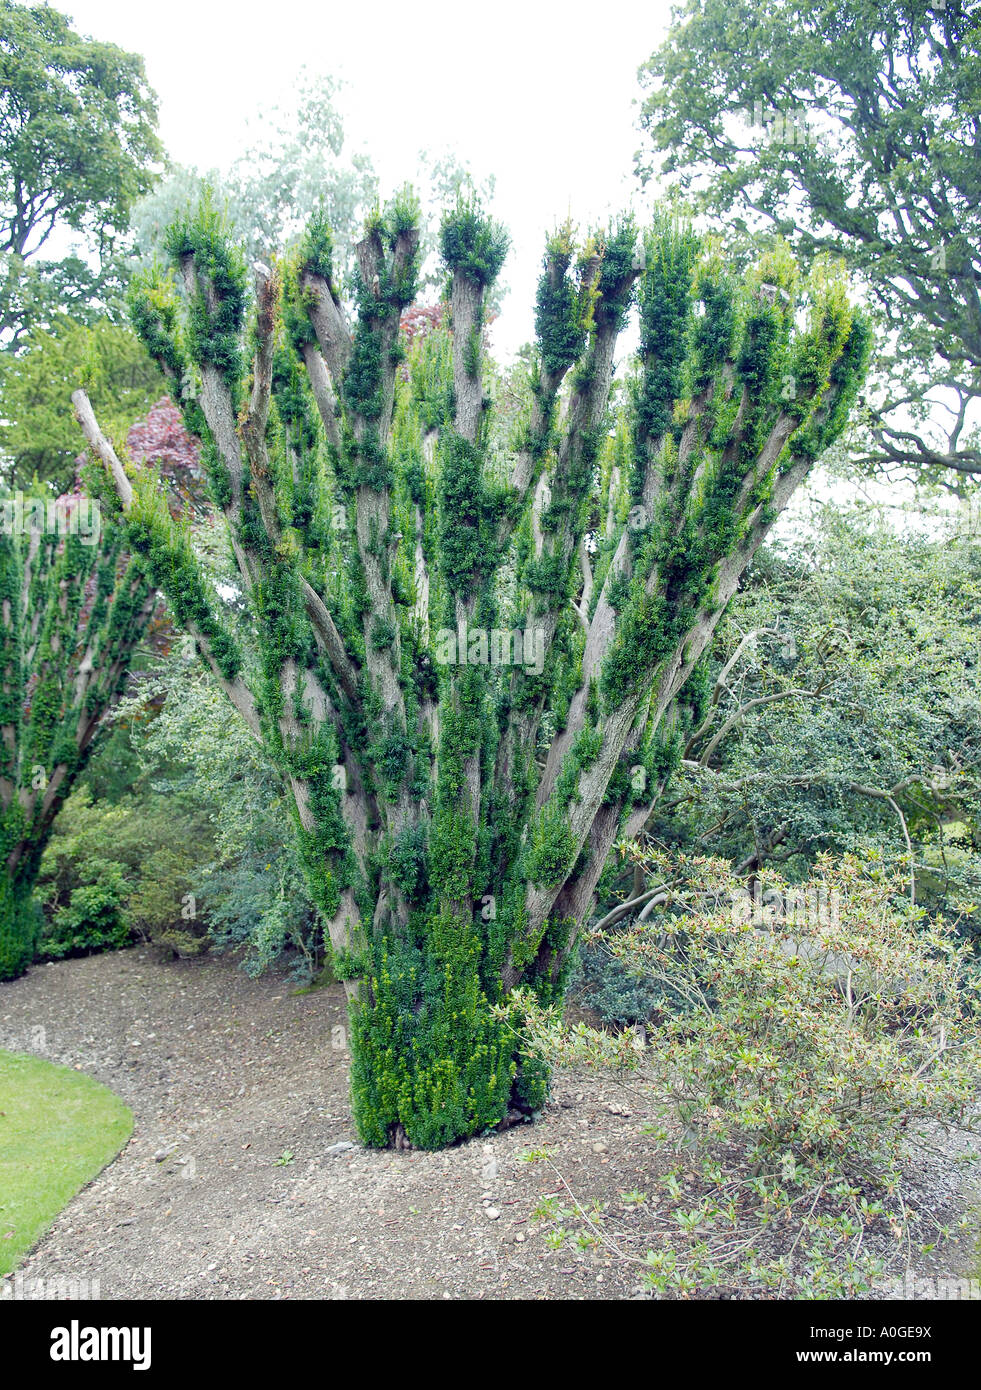 European Yew tree Stock Photo